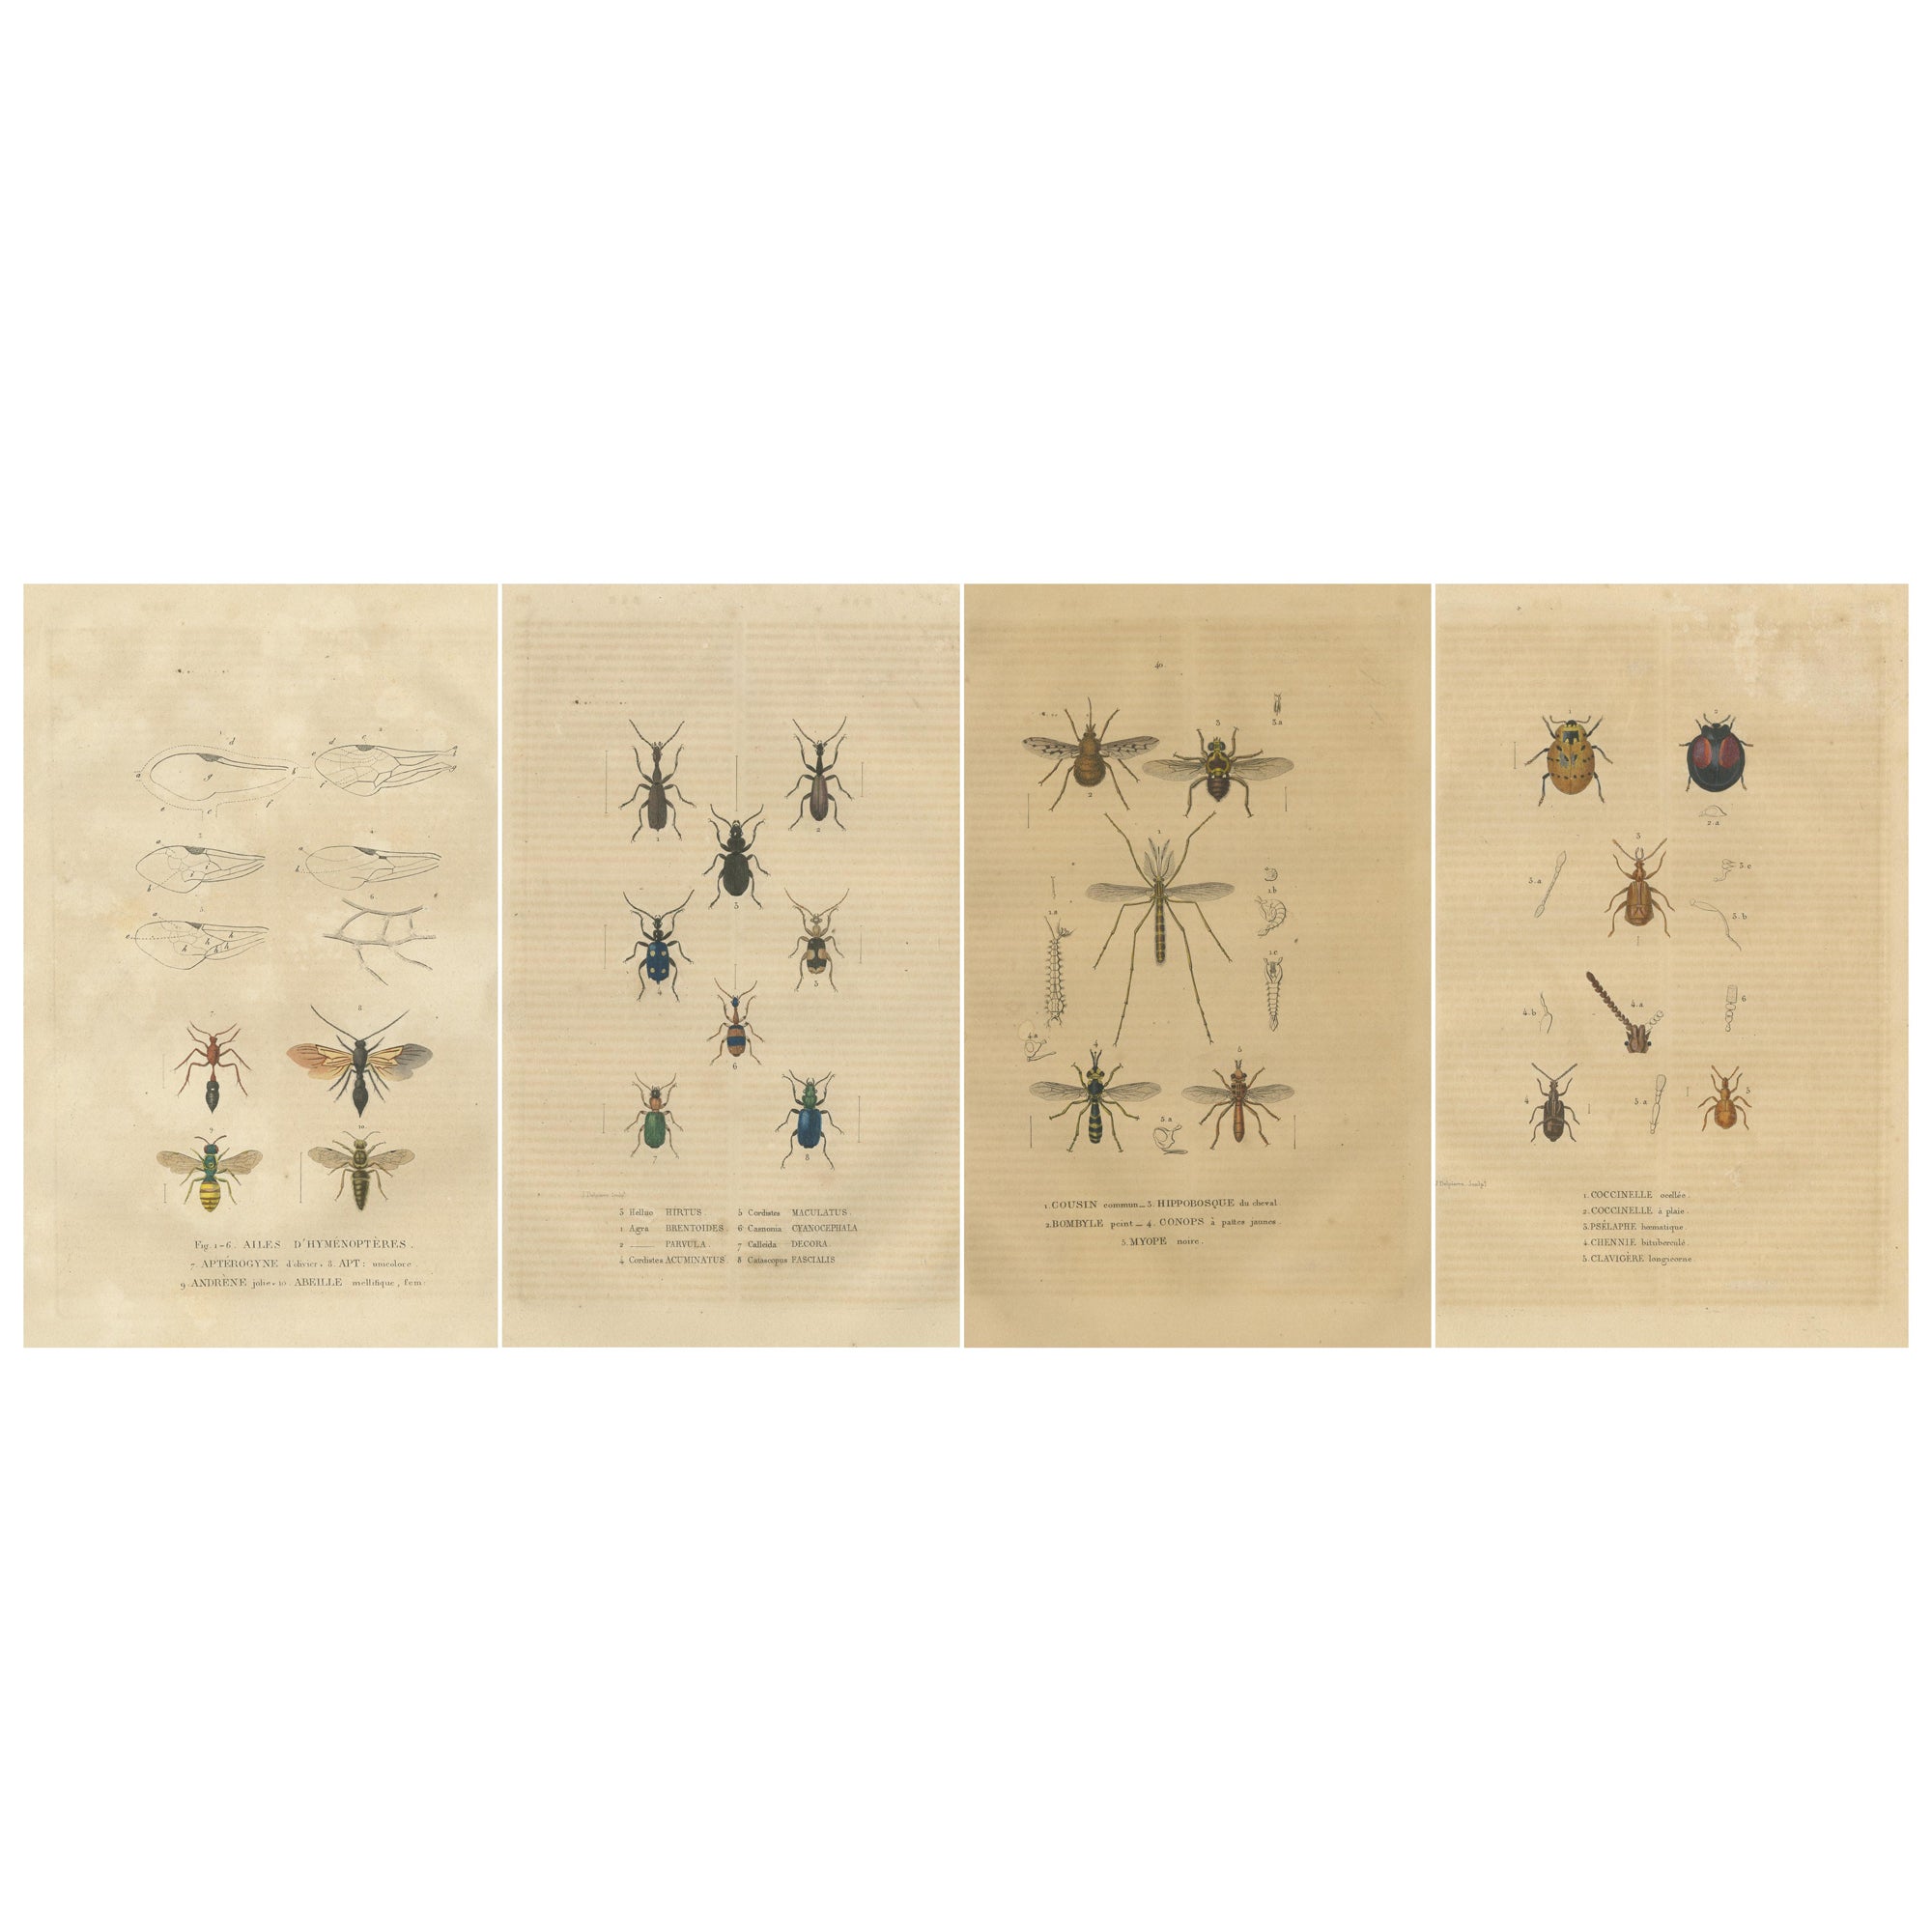 Entomologisches Bauwesen aus dem Jahr 1845: Eine detaillierte Studie der Insektenvielfalt